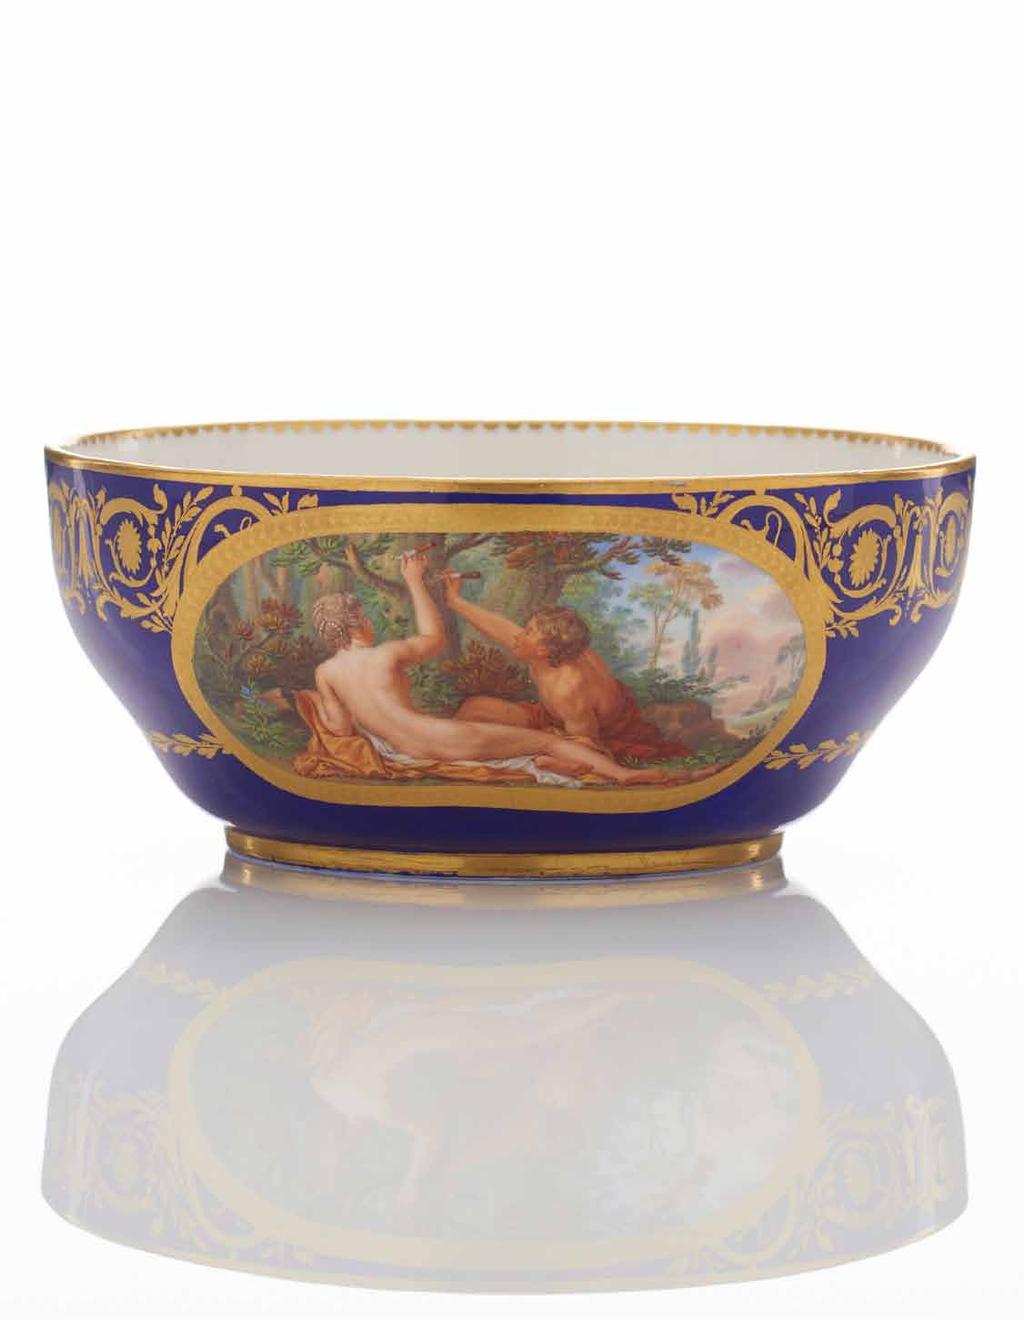 A Sèvres Soft-Paste Porcelain Bowl from a Tea Service 1785 jatte à lait painted by C.